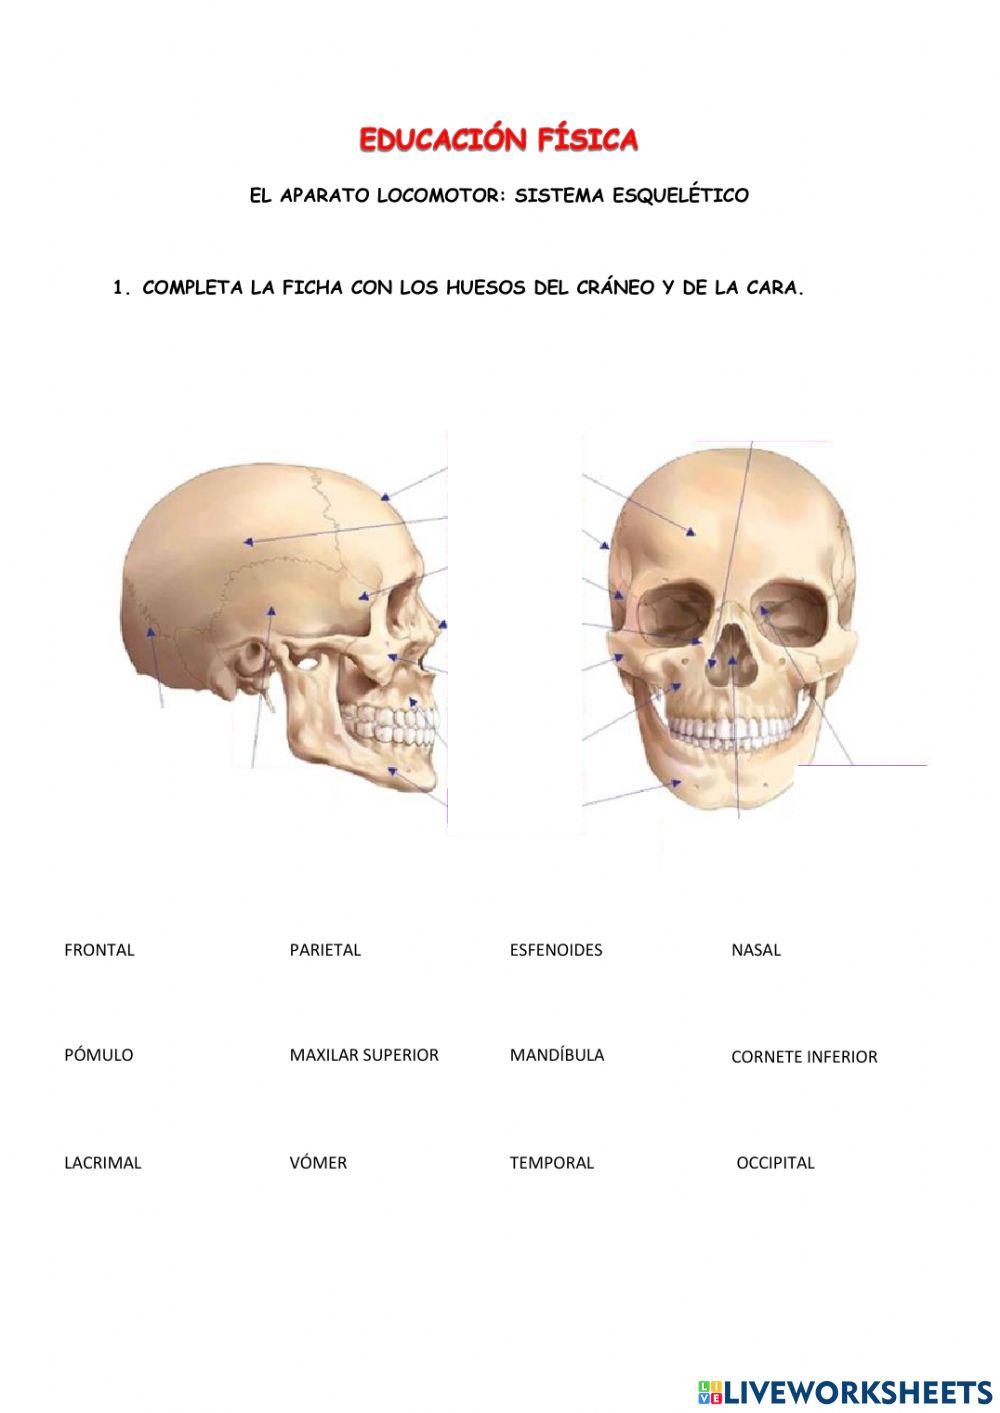 Los huesos del cráneo